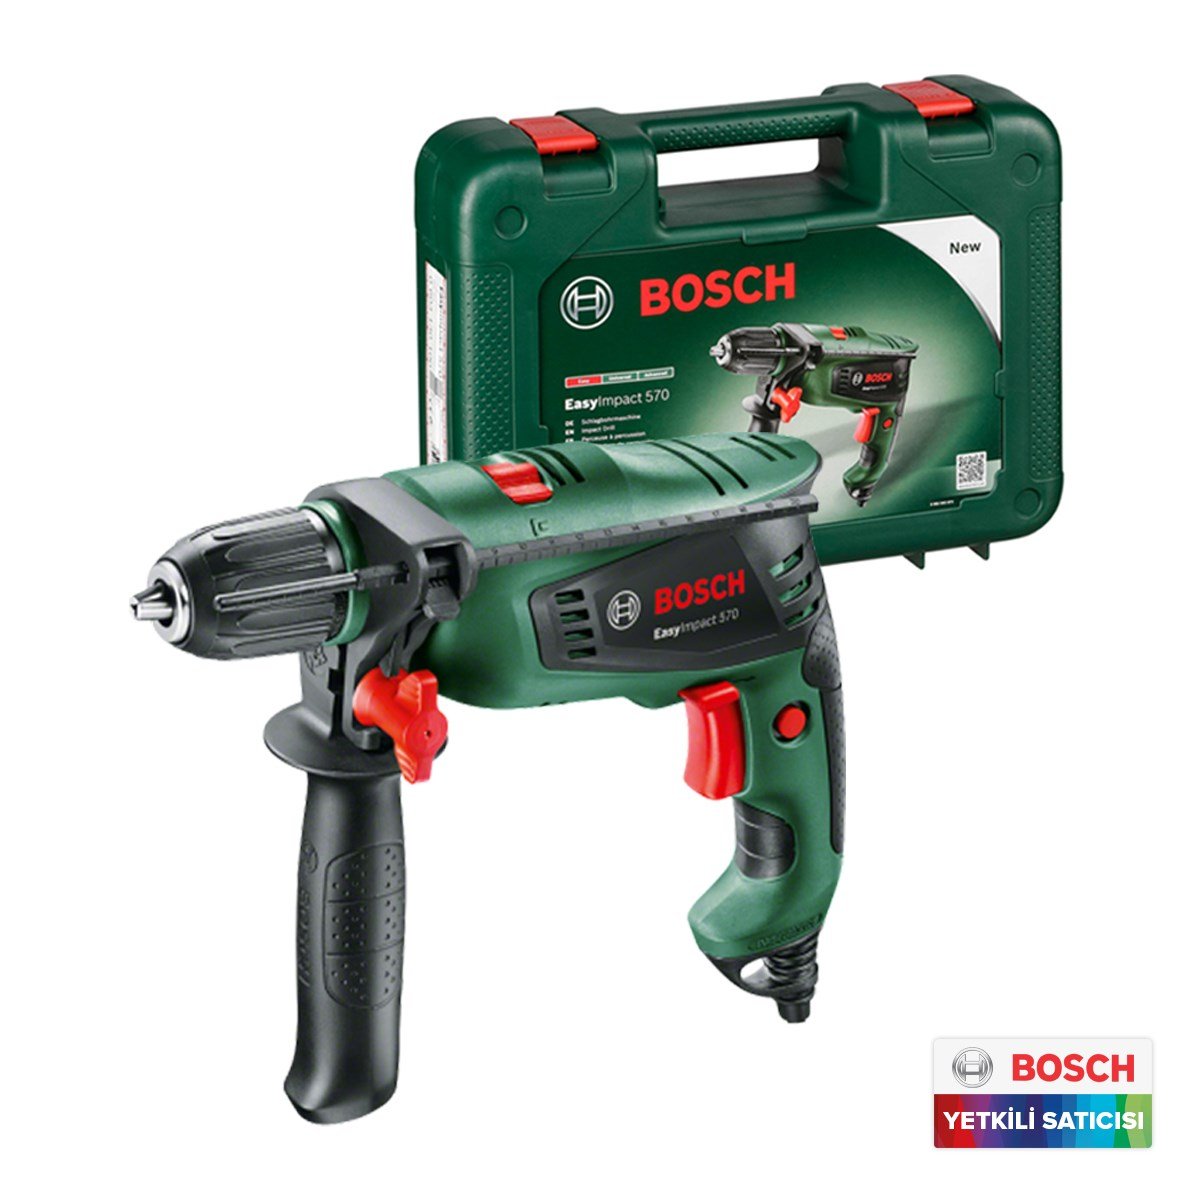 Bosch EasyImpact 570 Darbeli Matkap - 0603130100 - 7Kat